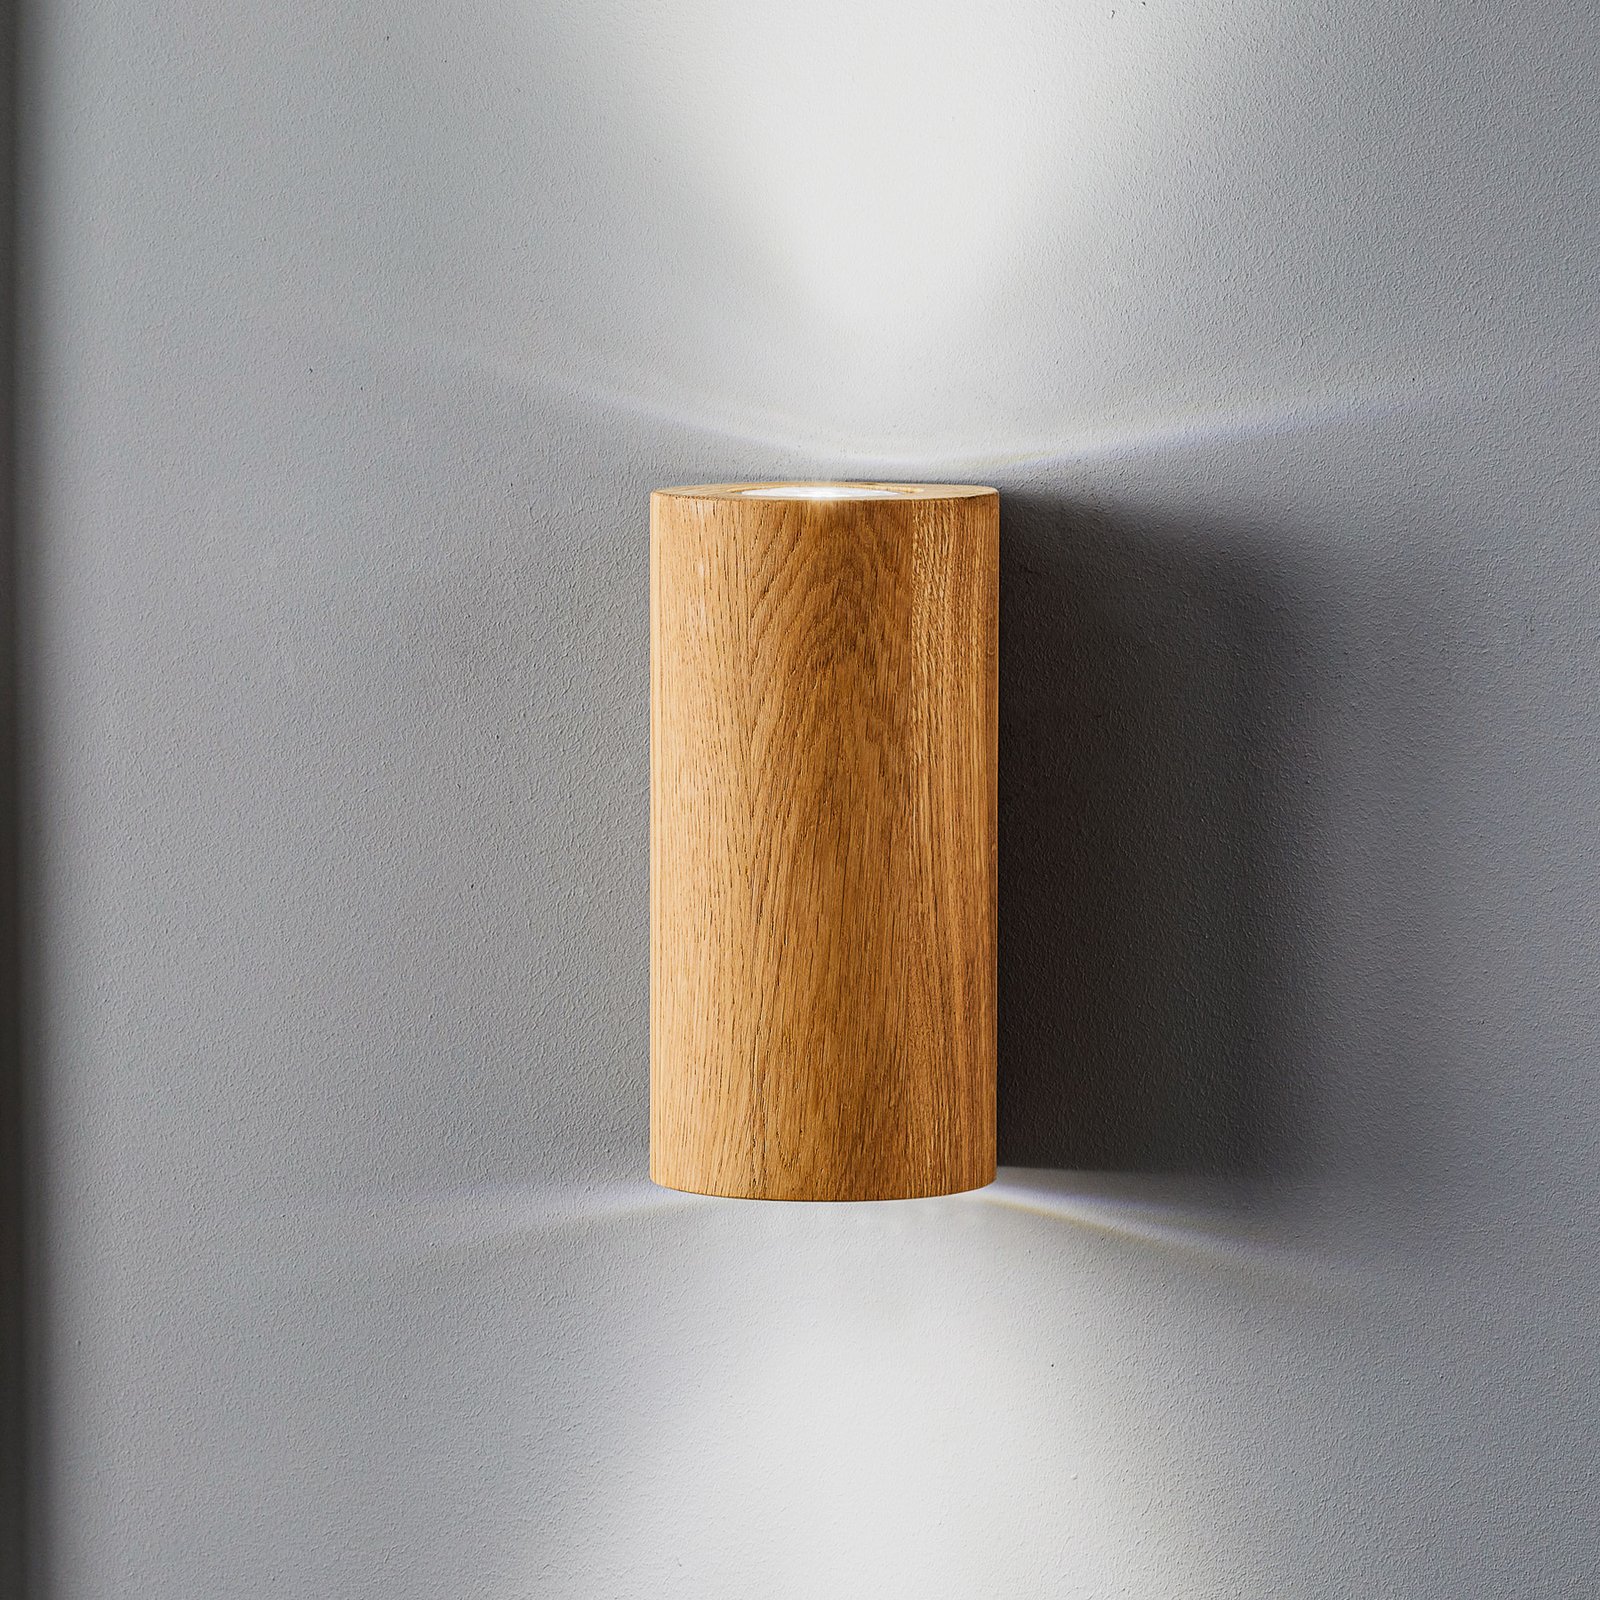 Applique Wooddream 1 lampe chêne, ronde, 20 cm